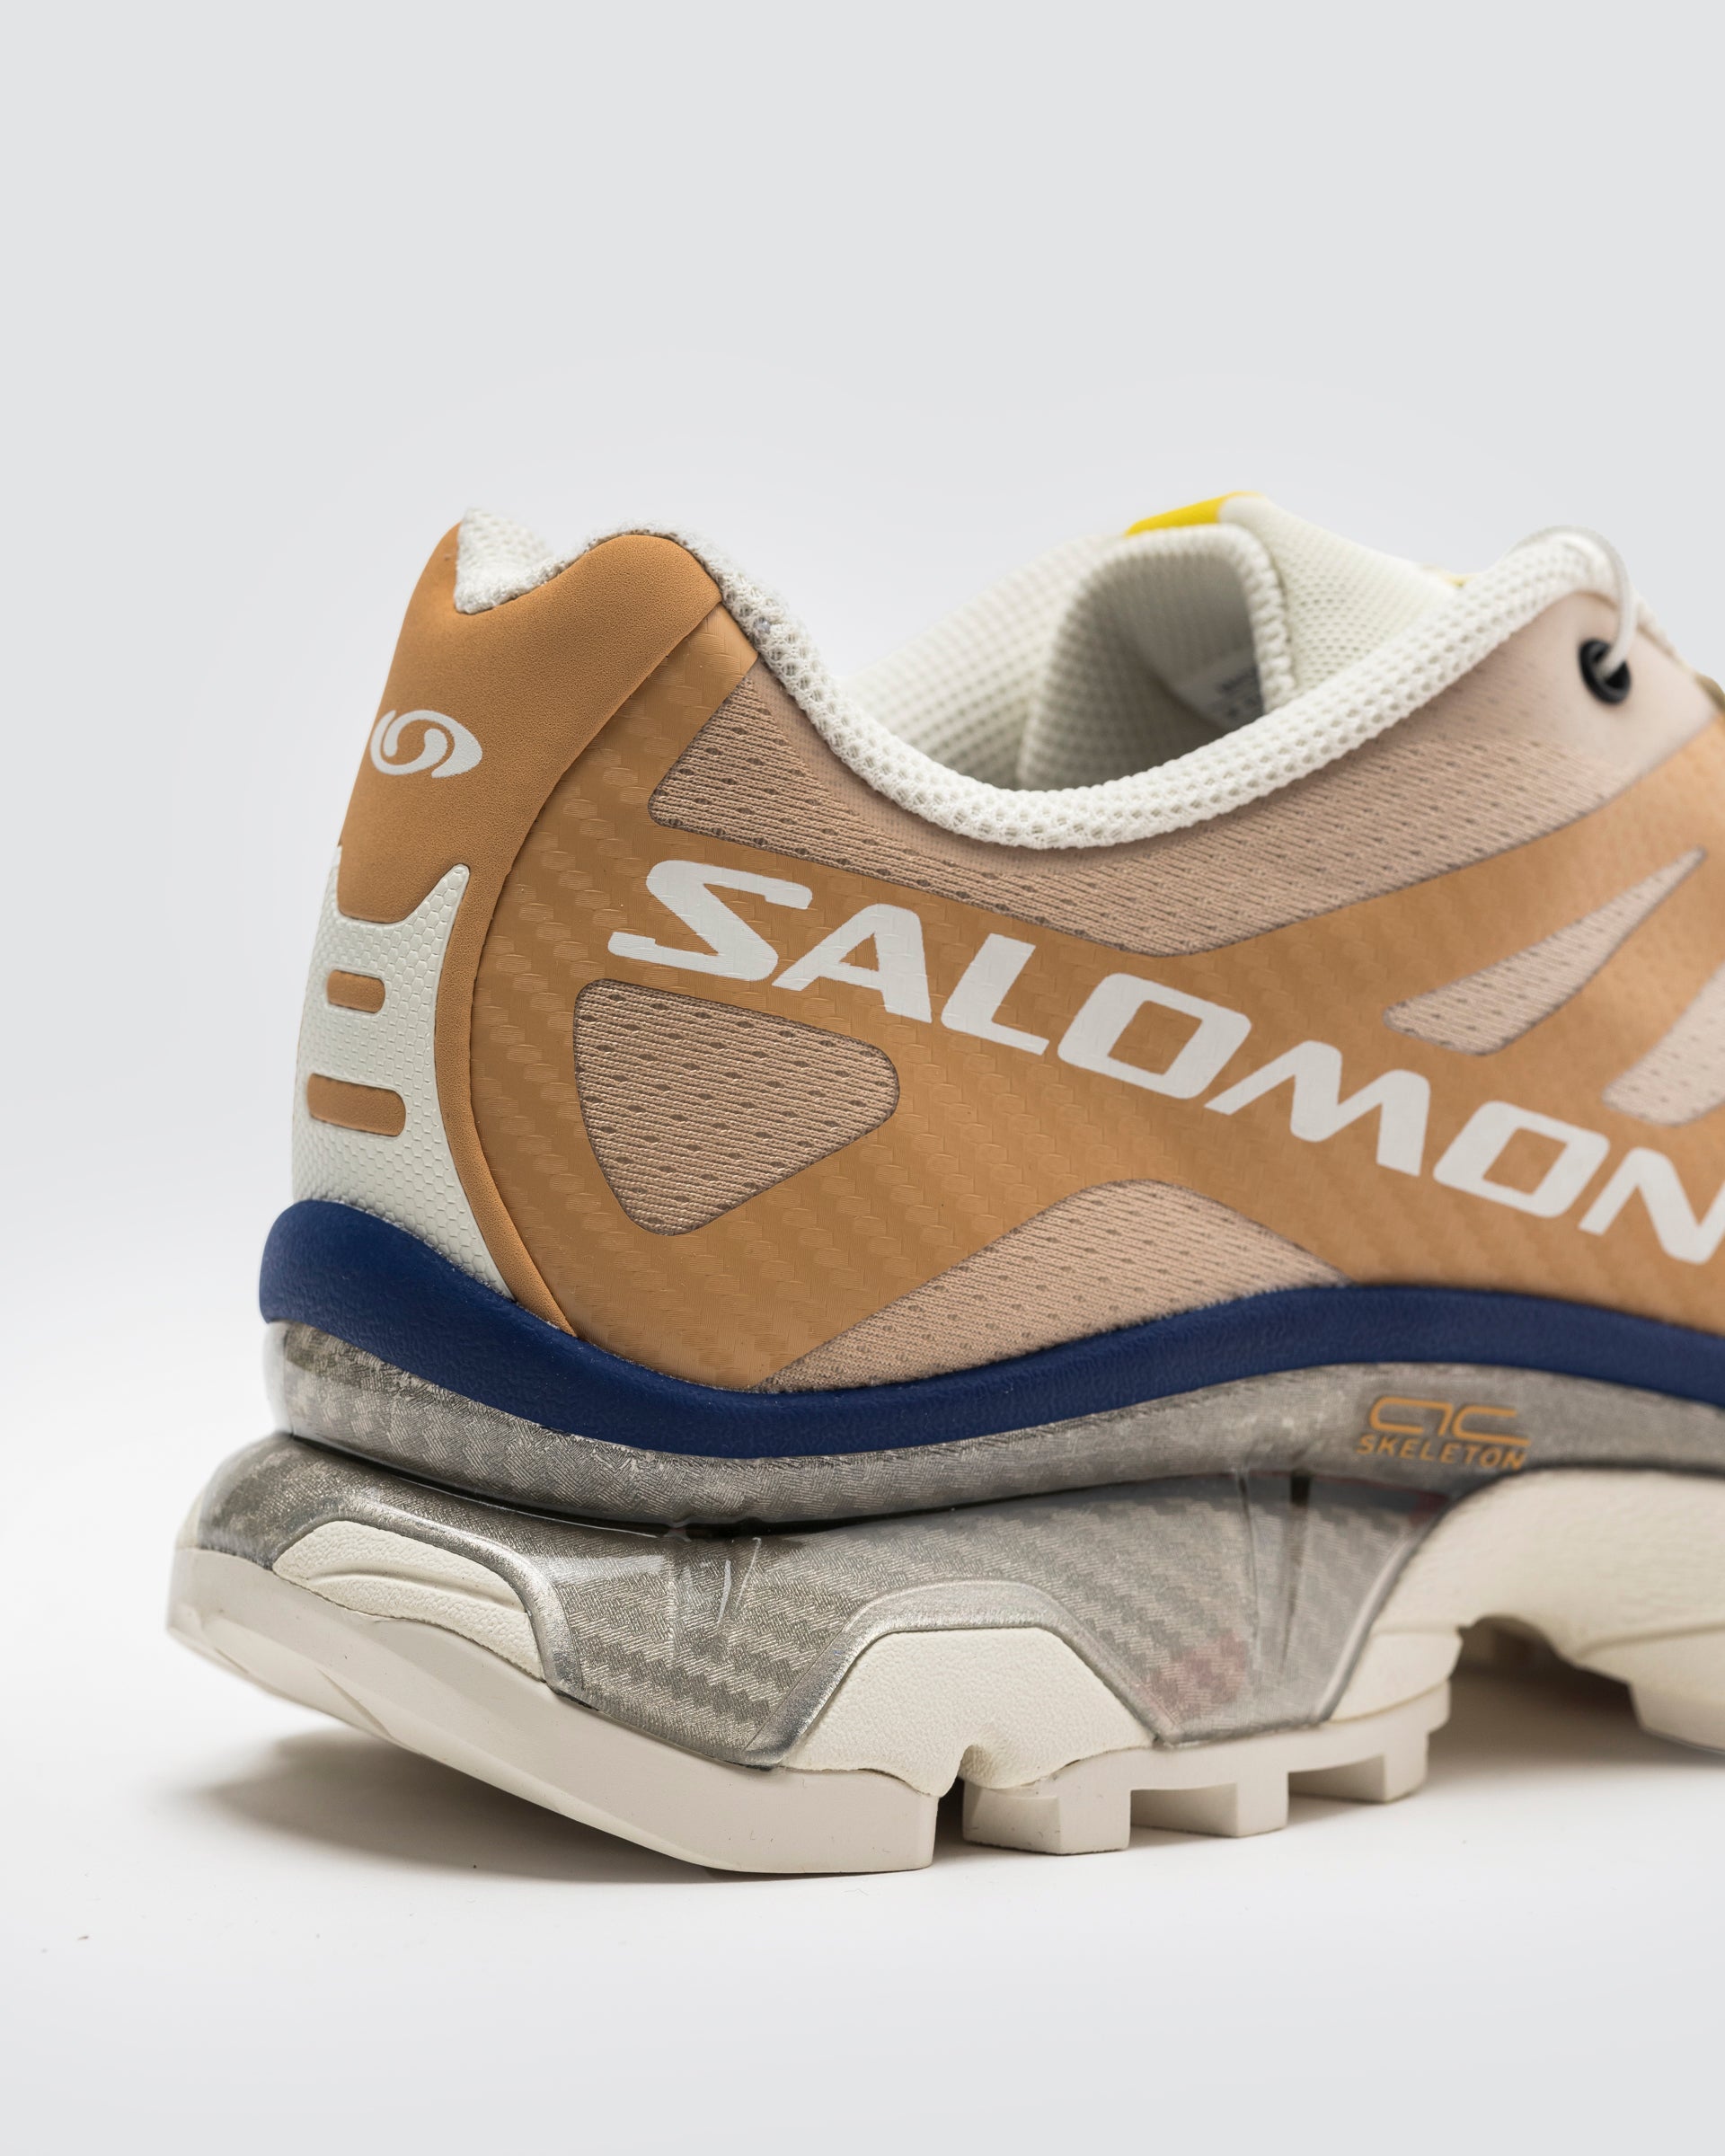 Salomon XT-4 OG Sneaker in Taffy, Vanilla, Blueprint